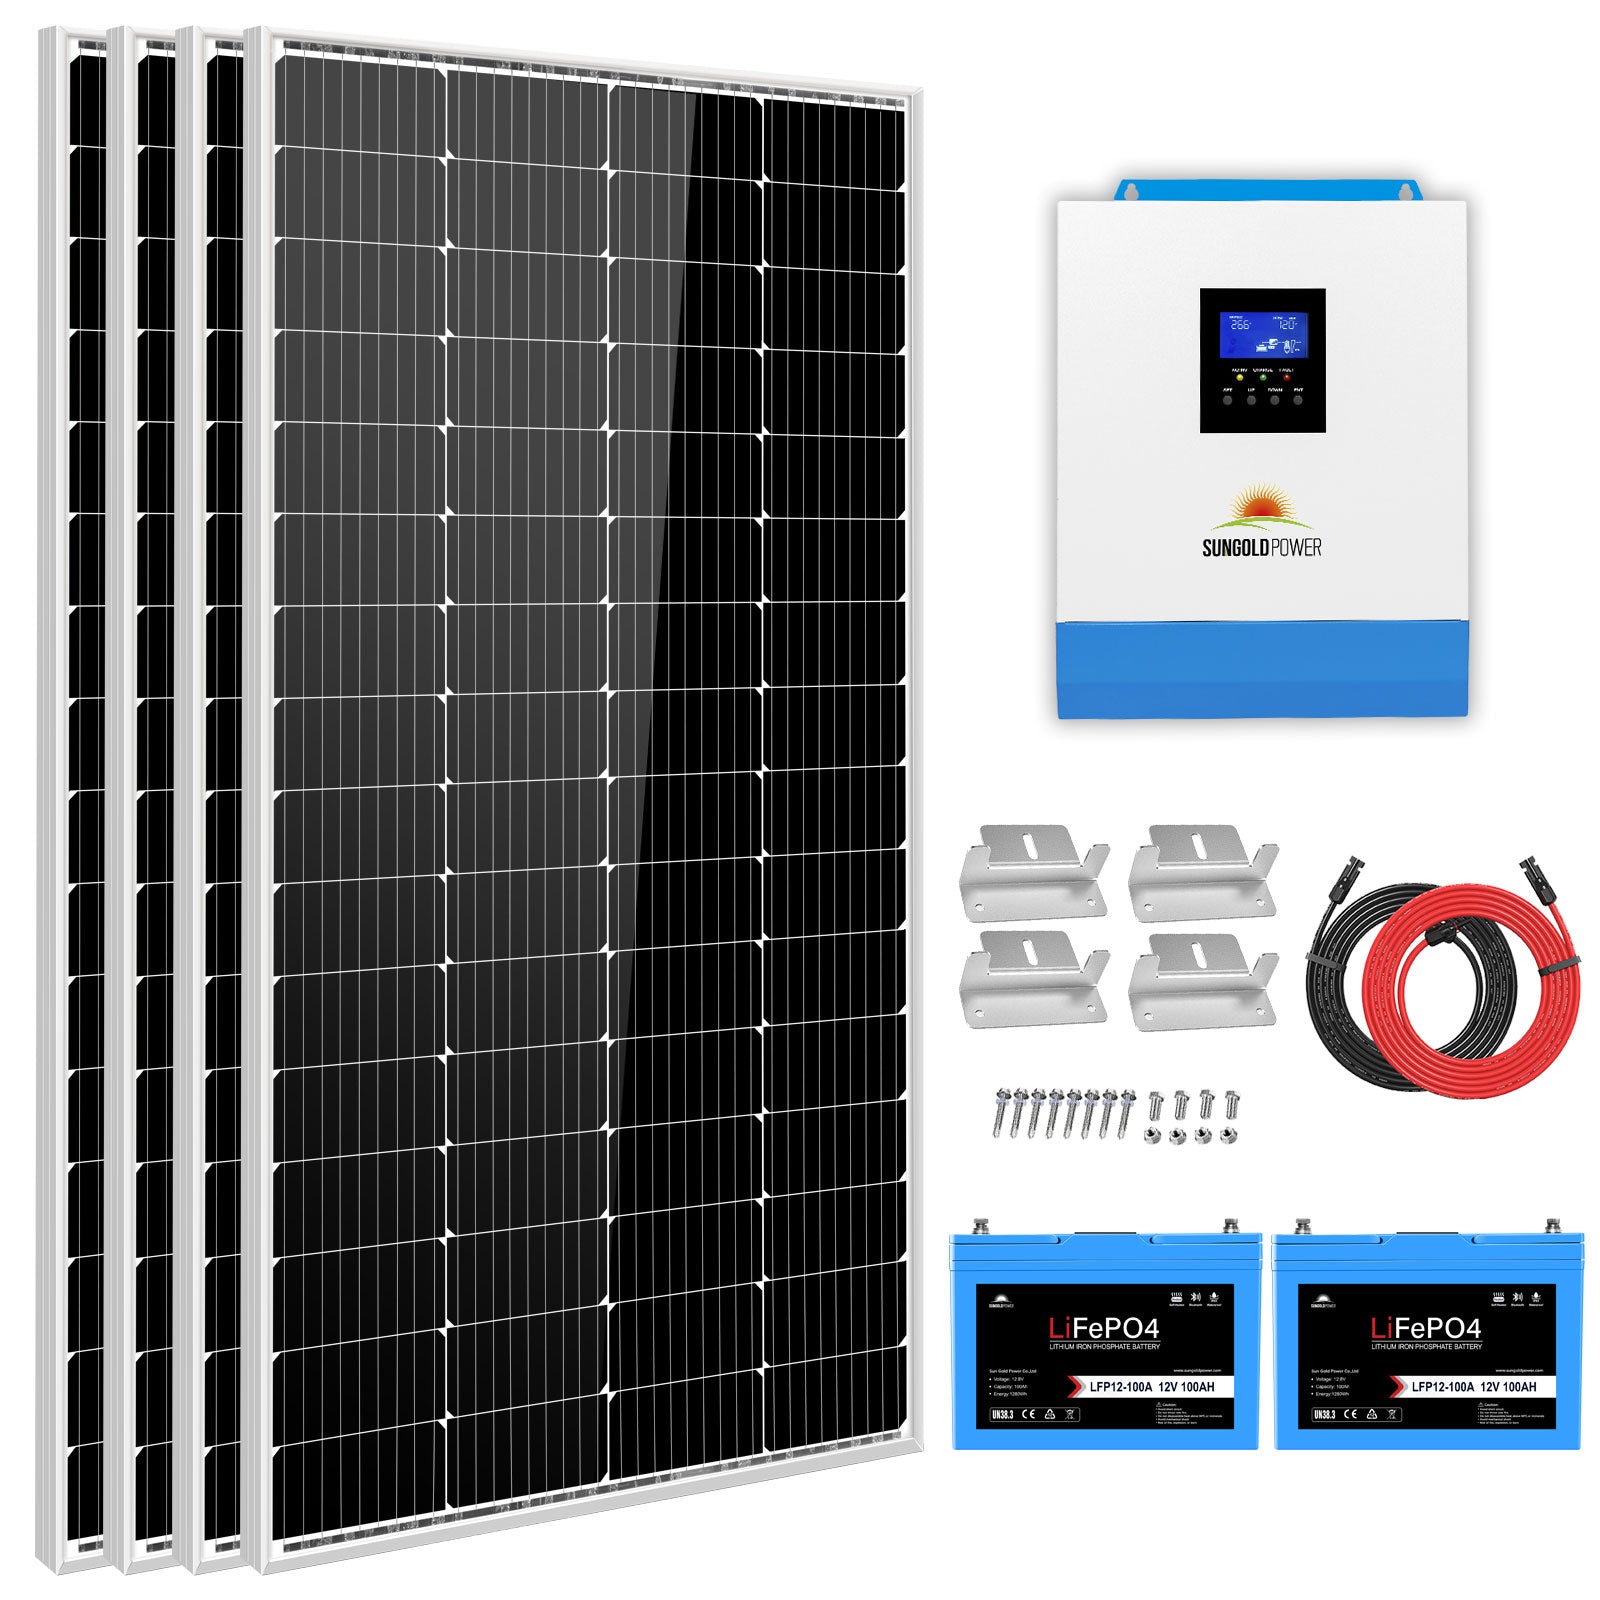 Sungold Power Solar Kit 3000W 24V Inverter 120V output Lithium Battery 800 Watt Solar Panel